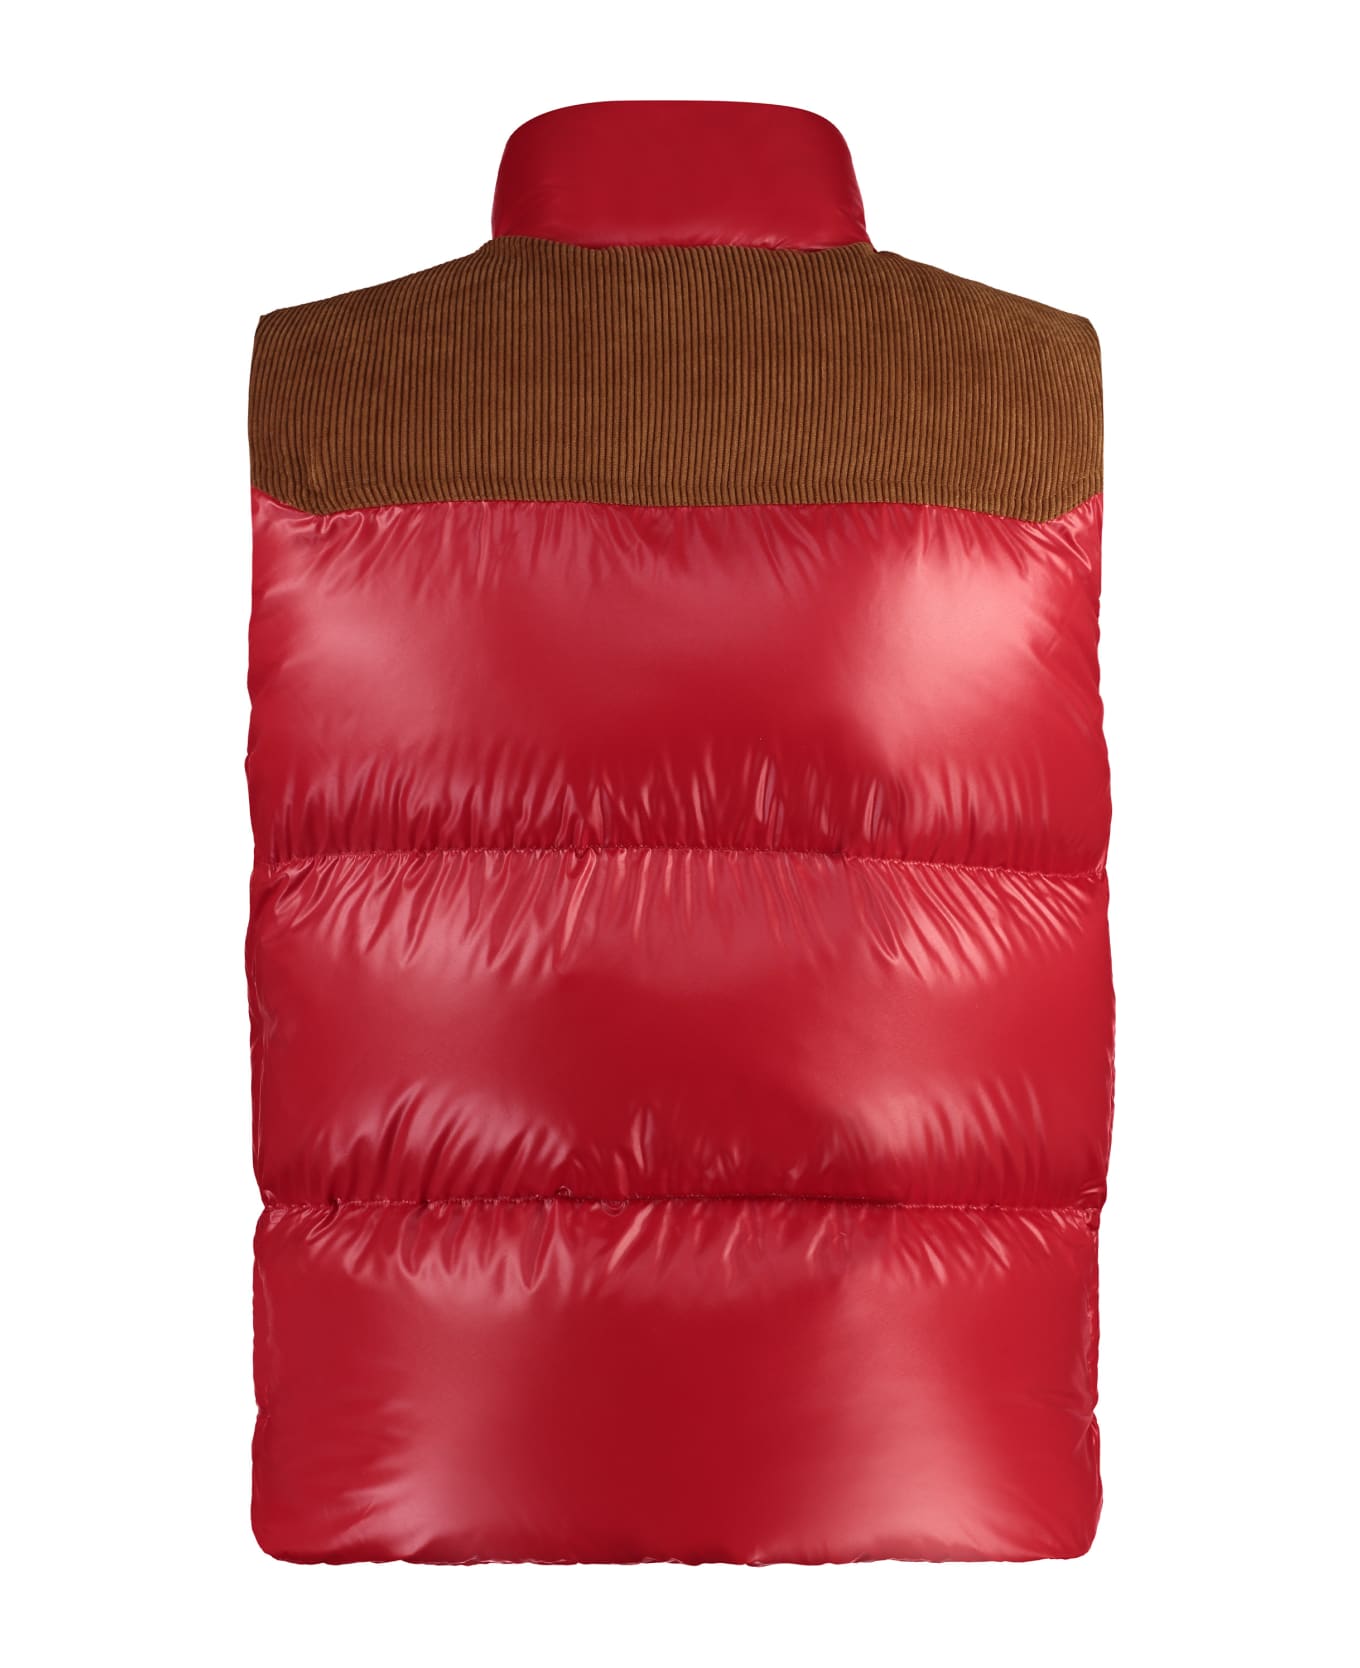 Moncler Ardeche Bodywarmer Jacket - Red